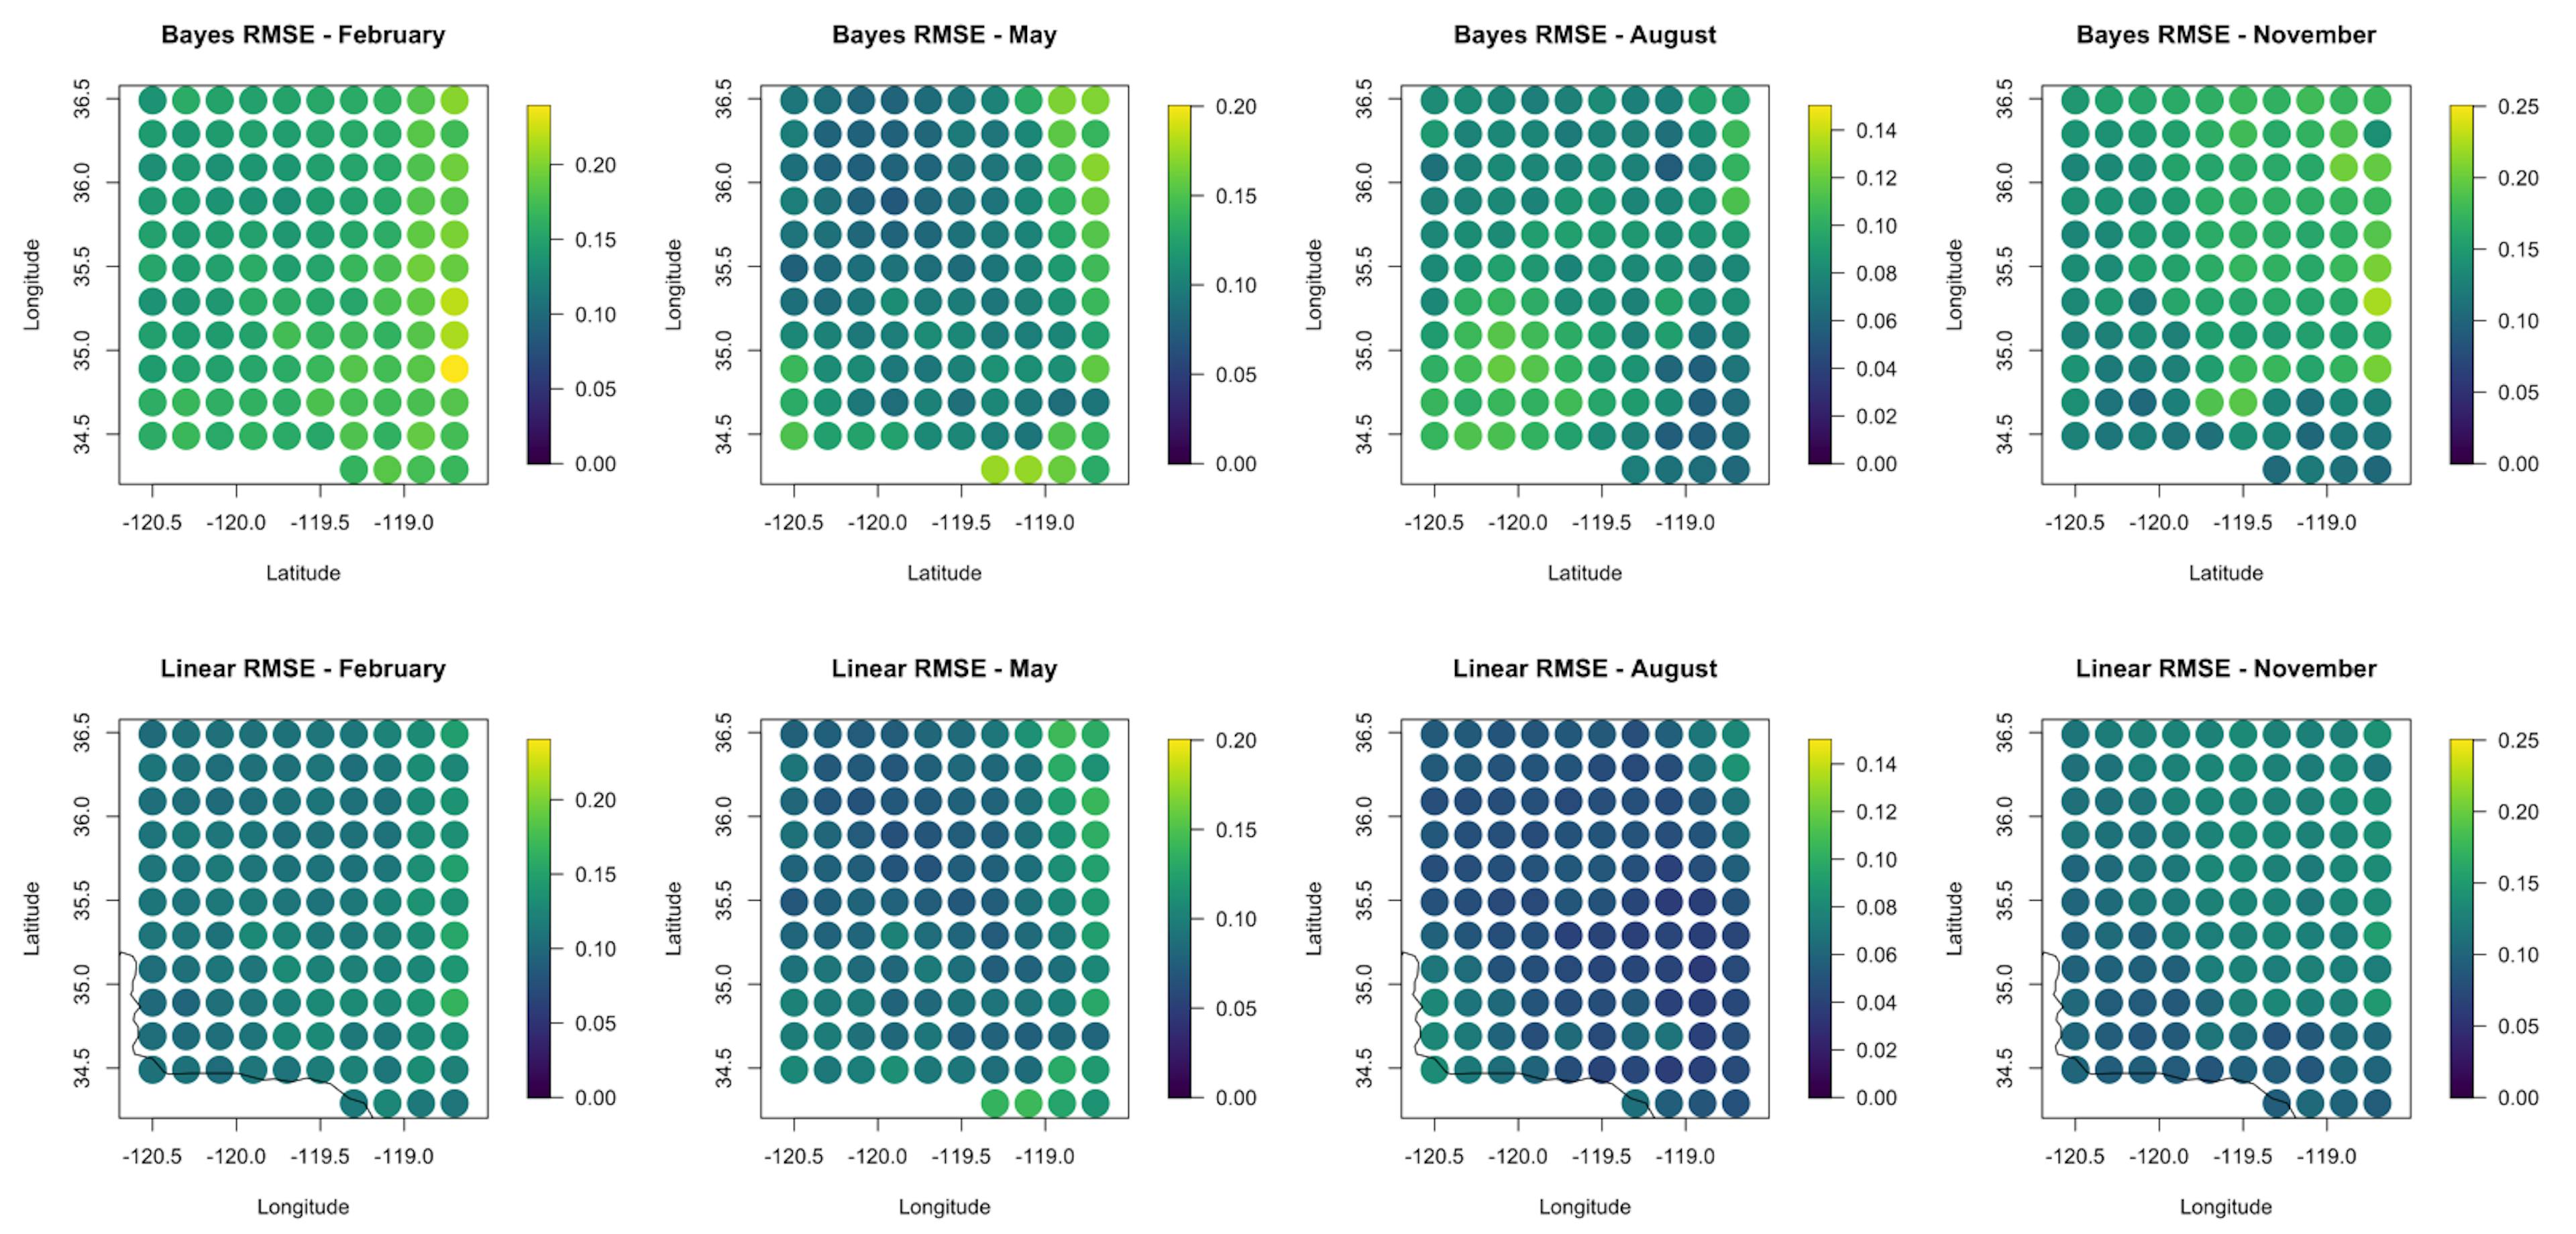 图 5. 所考虑的四个月样本外预测的 RMSE 值的比较。贝叶斯模型结果位于顶行，朴素重新网格化结果位于底行。贝叶斯结果和 11 月份两个模型的 RMSE 通常较高。